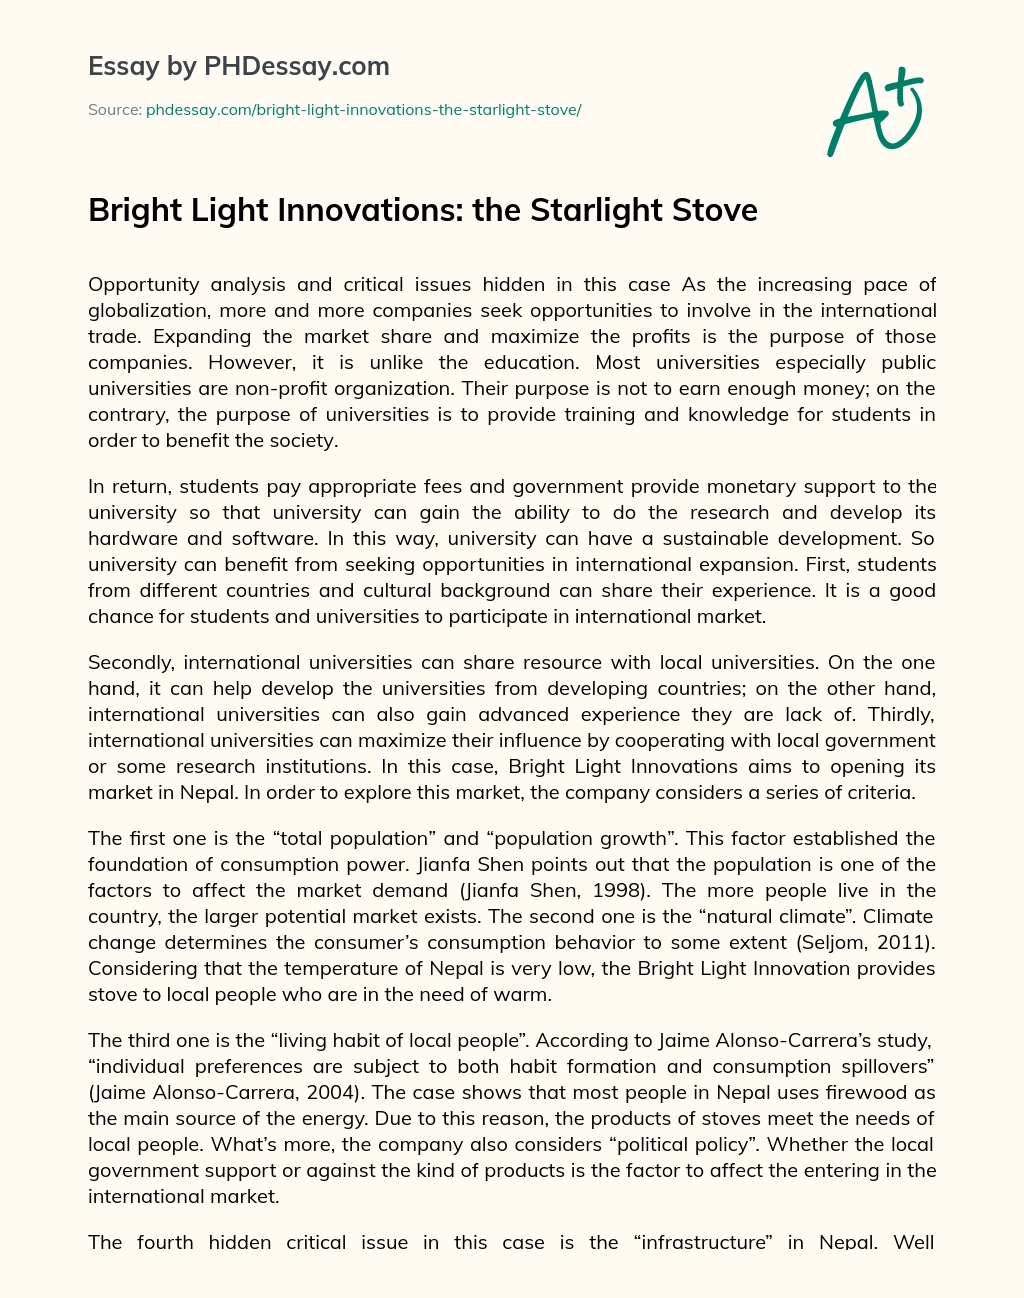 Bright Light Innovations: the Starlight Stove essay